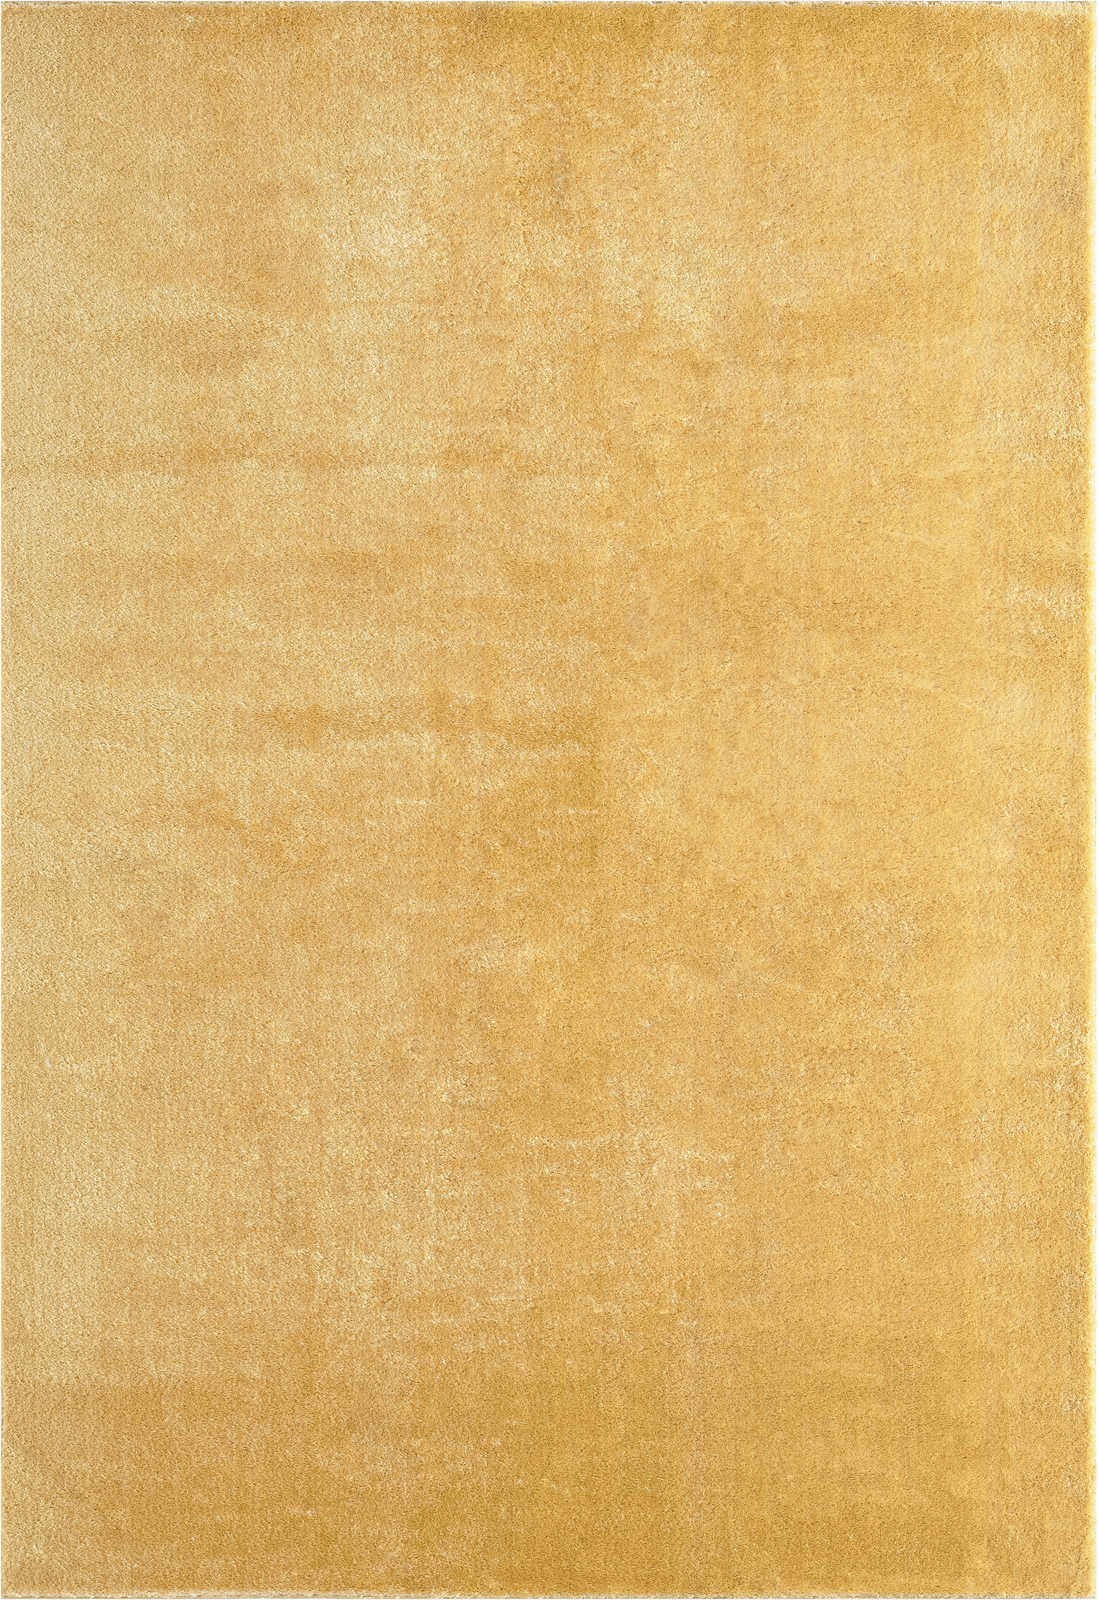             Kuschelweicher Hochflor Teppich in Gold – 290 x 200 cm
        